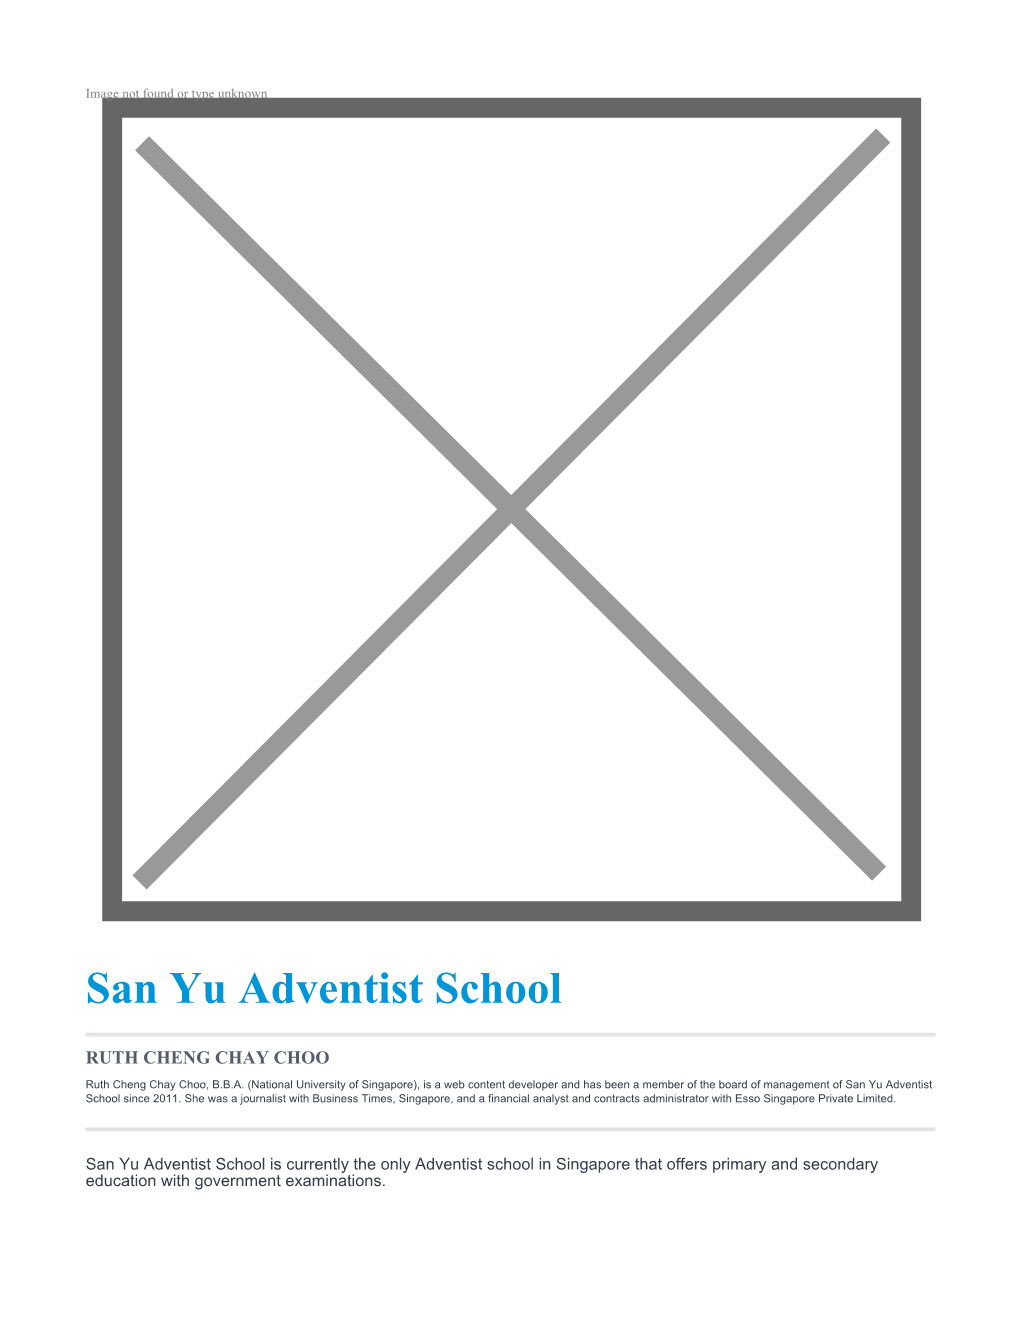 San Yu Adventist School